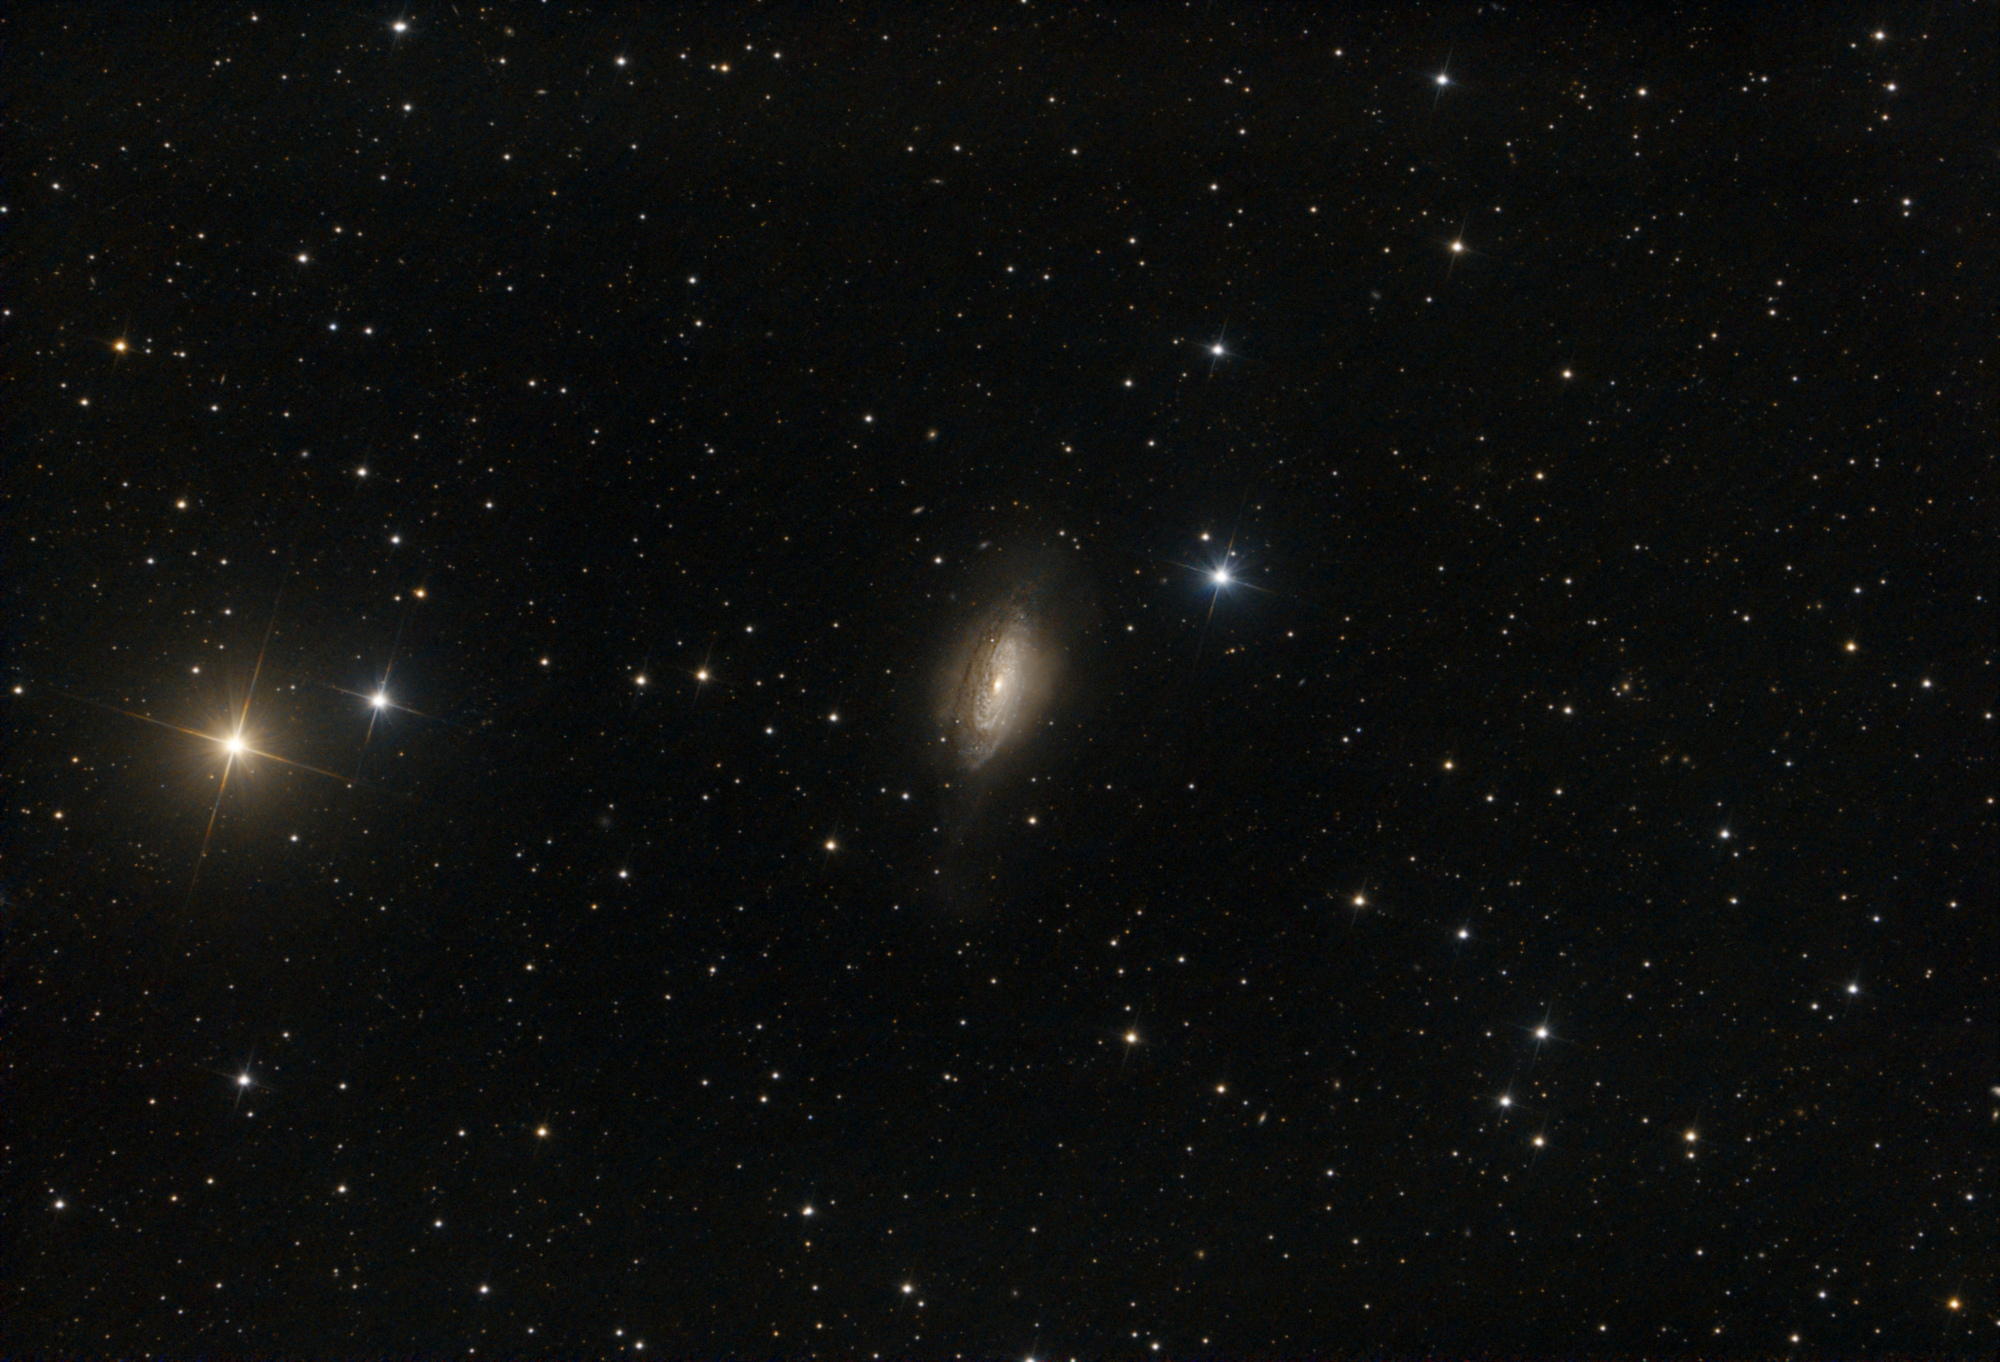 r_proc_NGC3521_HDR_comp.thumb.jpg.2b6982e9c28d7b3c76bf83125b6e7b05.jpg